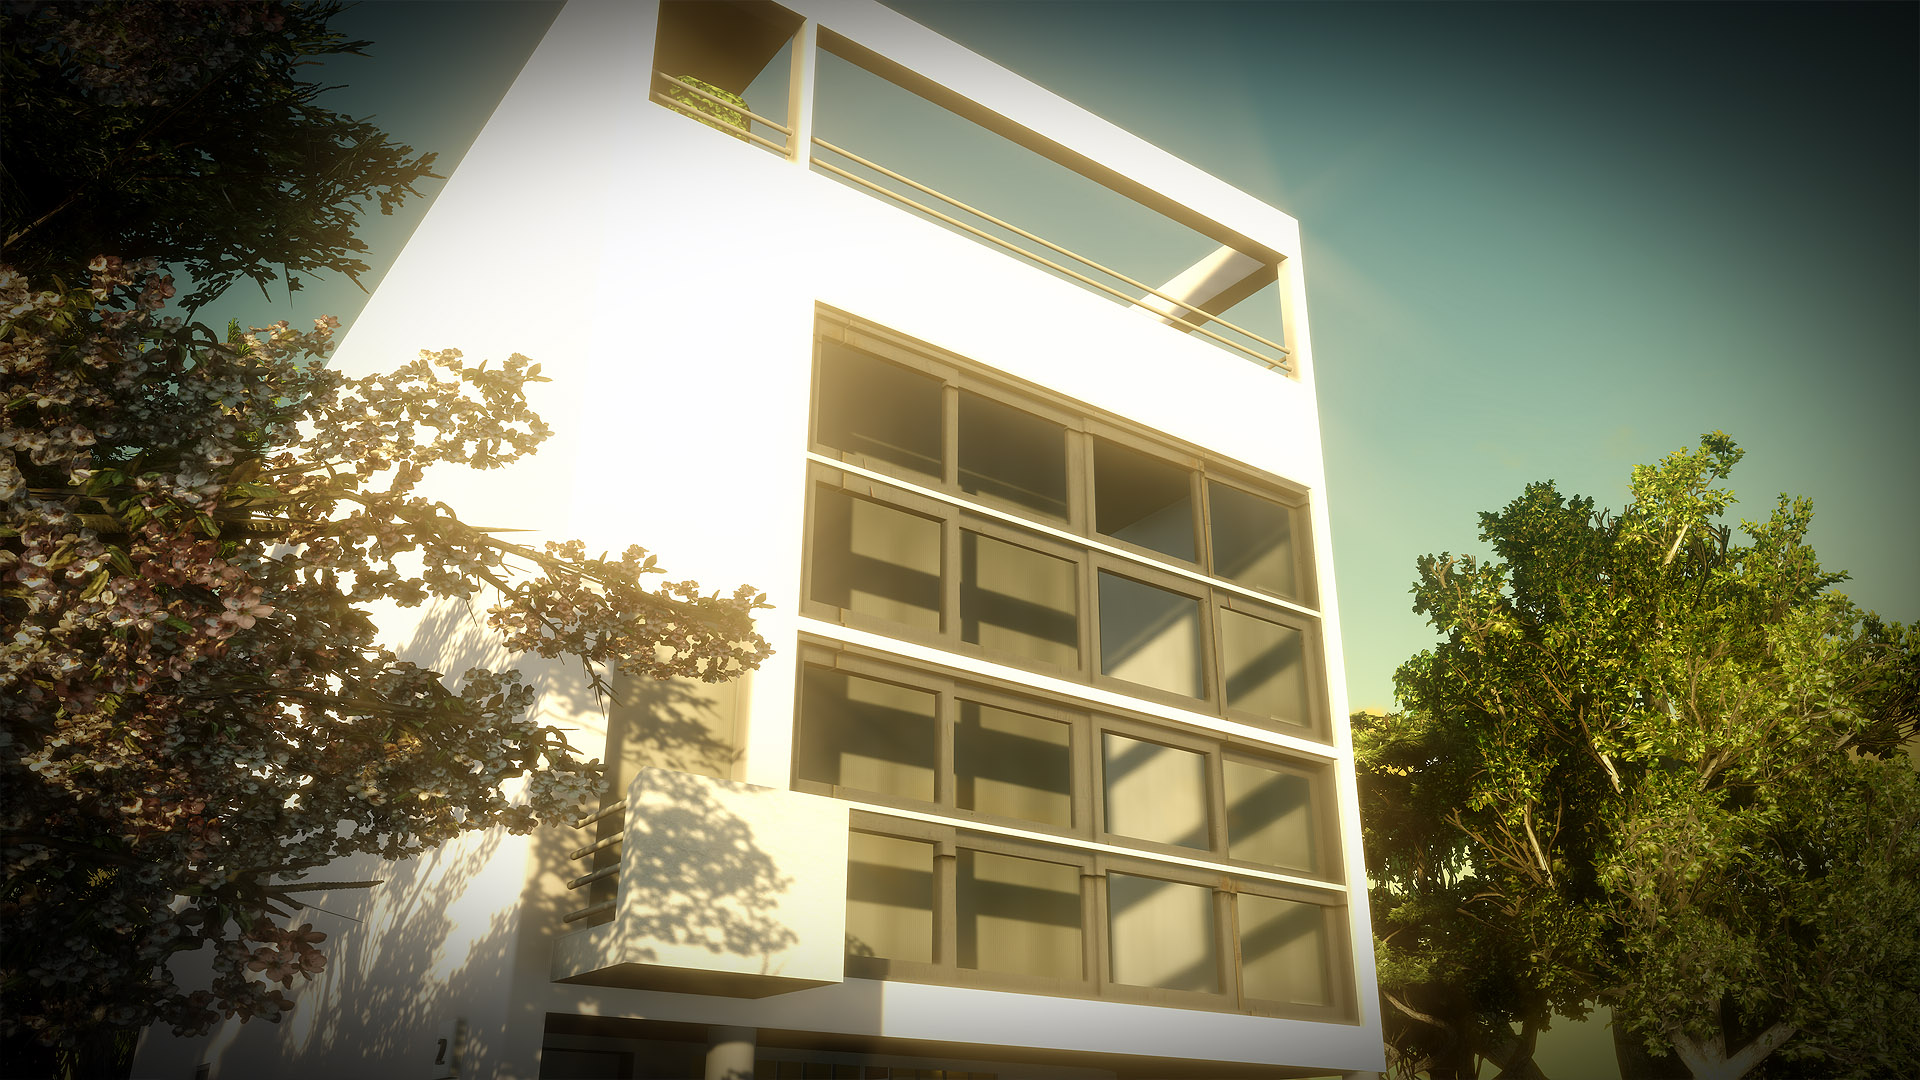 Libre interprétation Villa Moderne Le Corbusier - Animation d'introduction pour un événement hommage